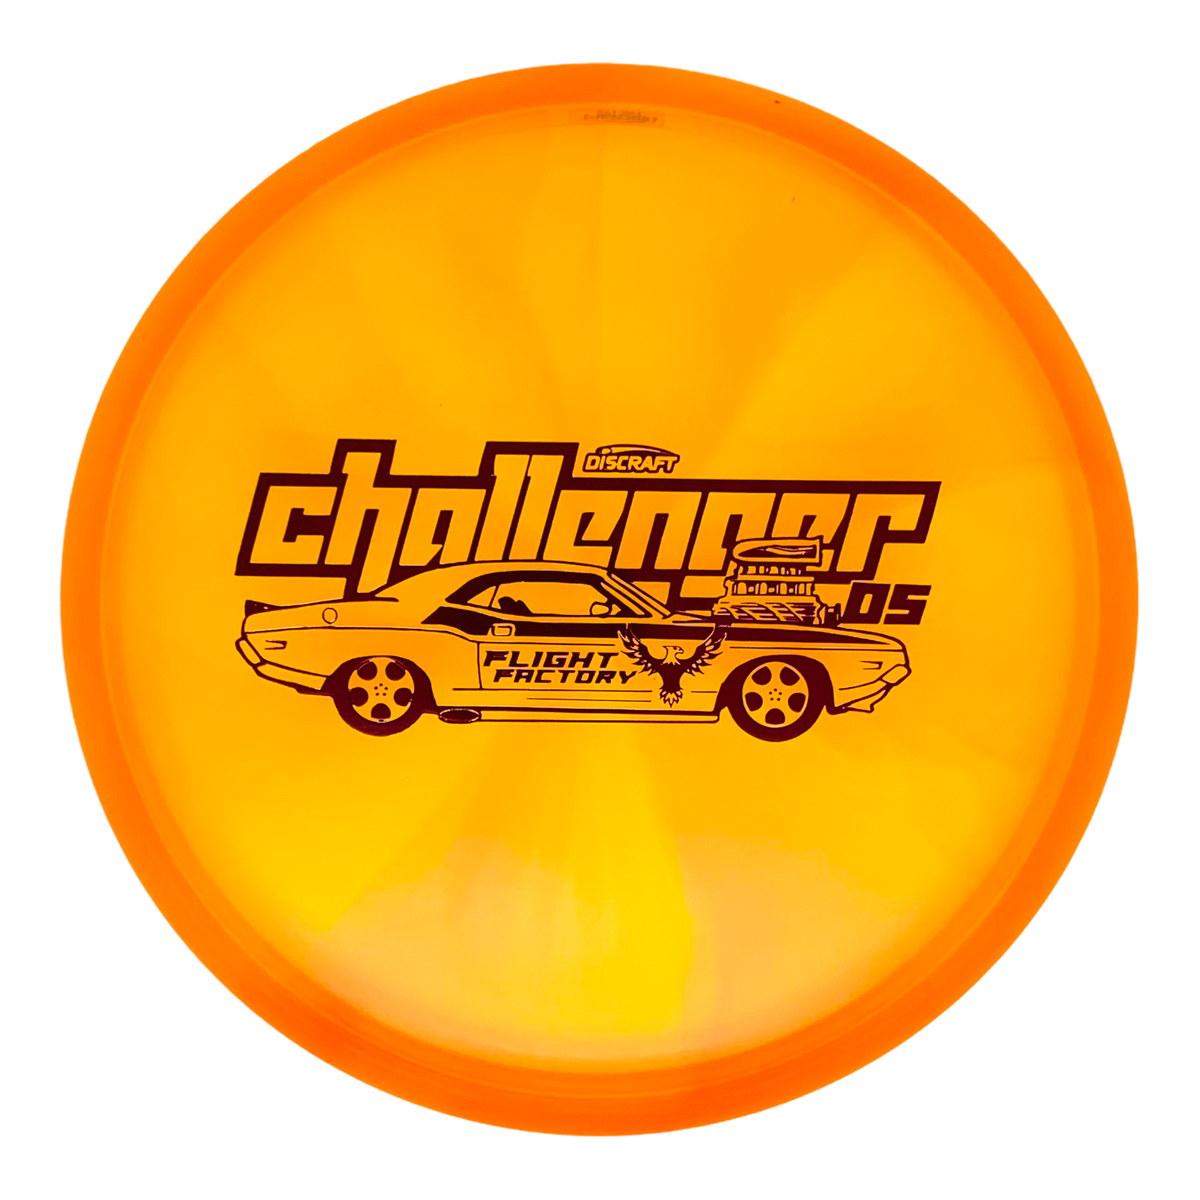 Discraft Tour Z Swirl Challenger OS - Challenger Oranges